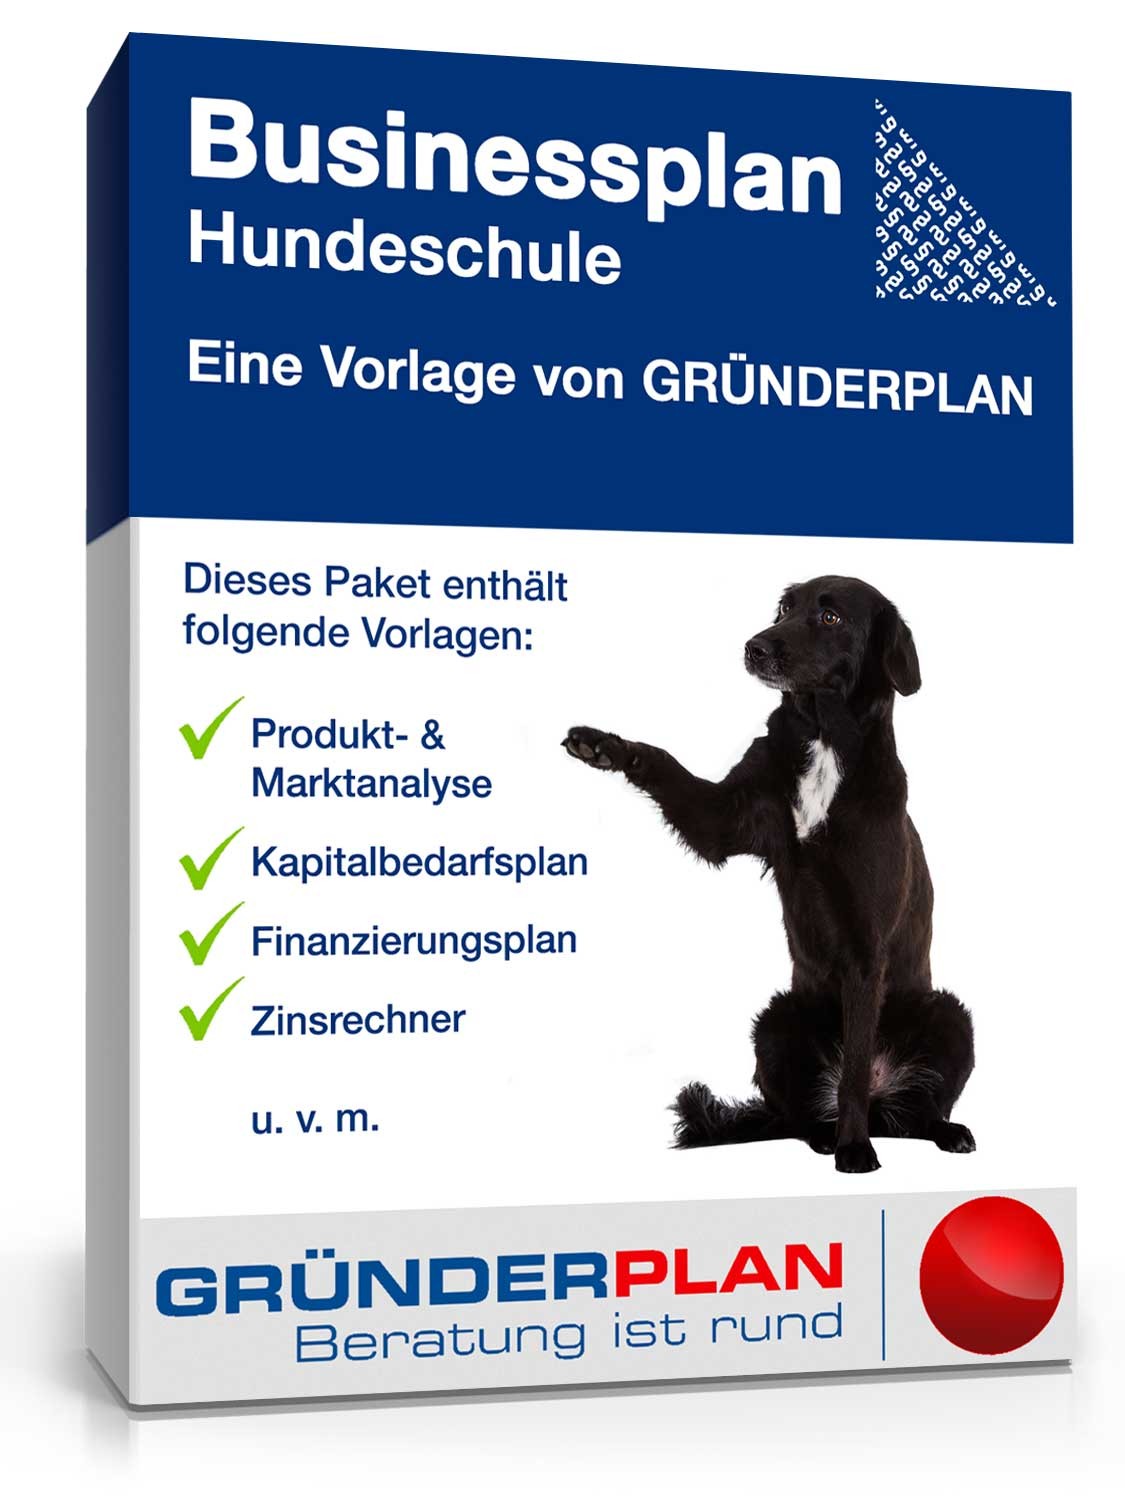 Hauptbild des Produkts: Businessplan Hundeschule von Gründerplan